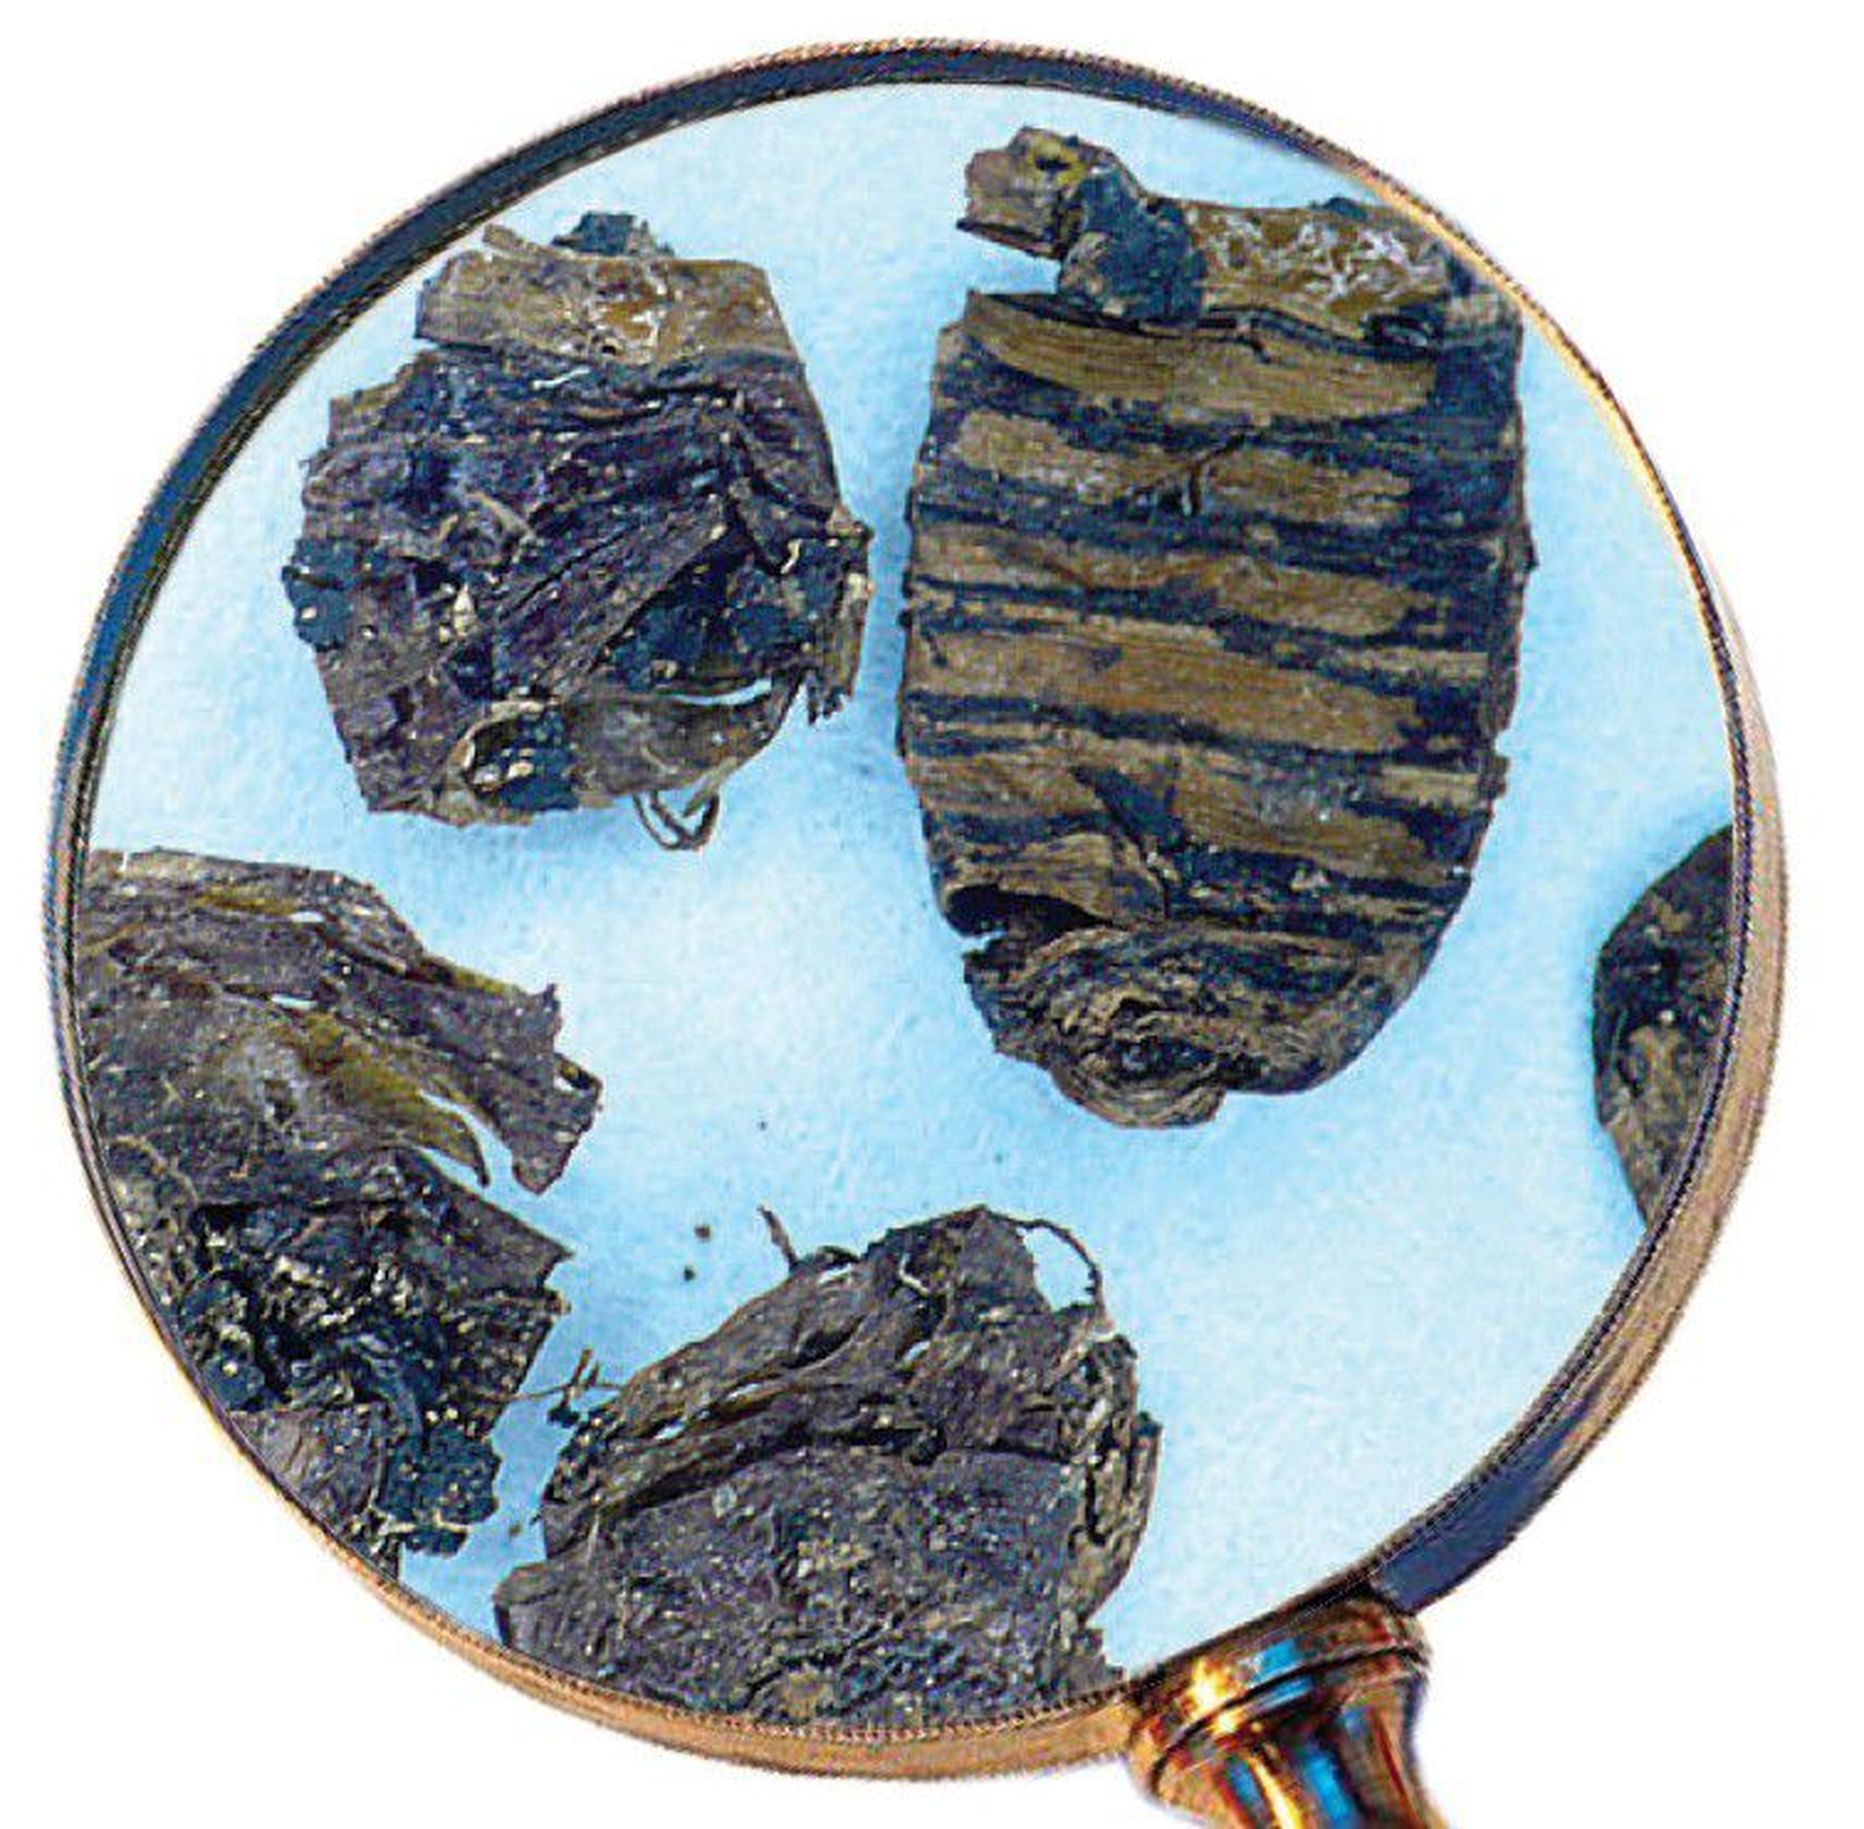 800 aasta vanused kärbsenukkude säilmed pildistatuna mikroskoobi all.